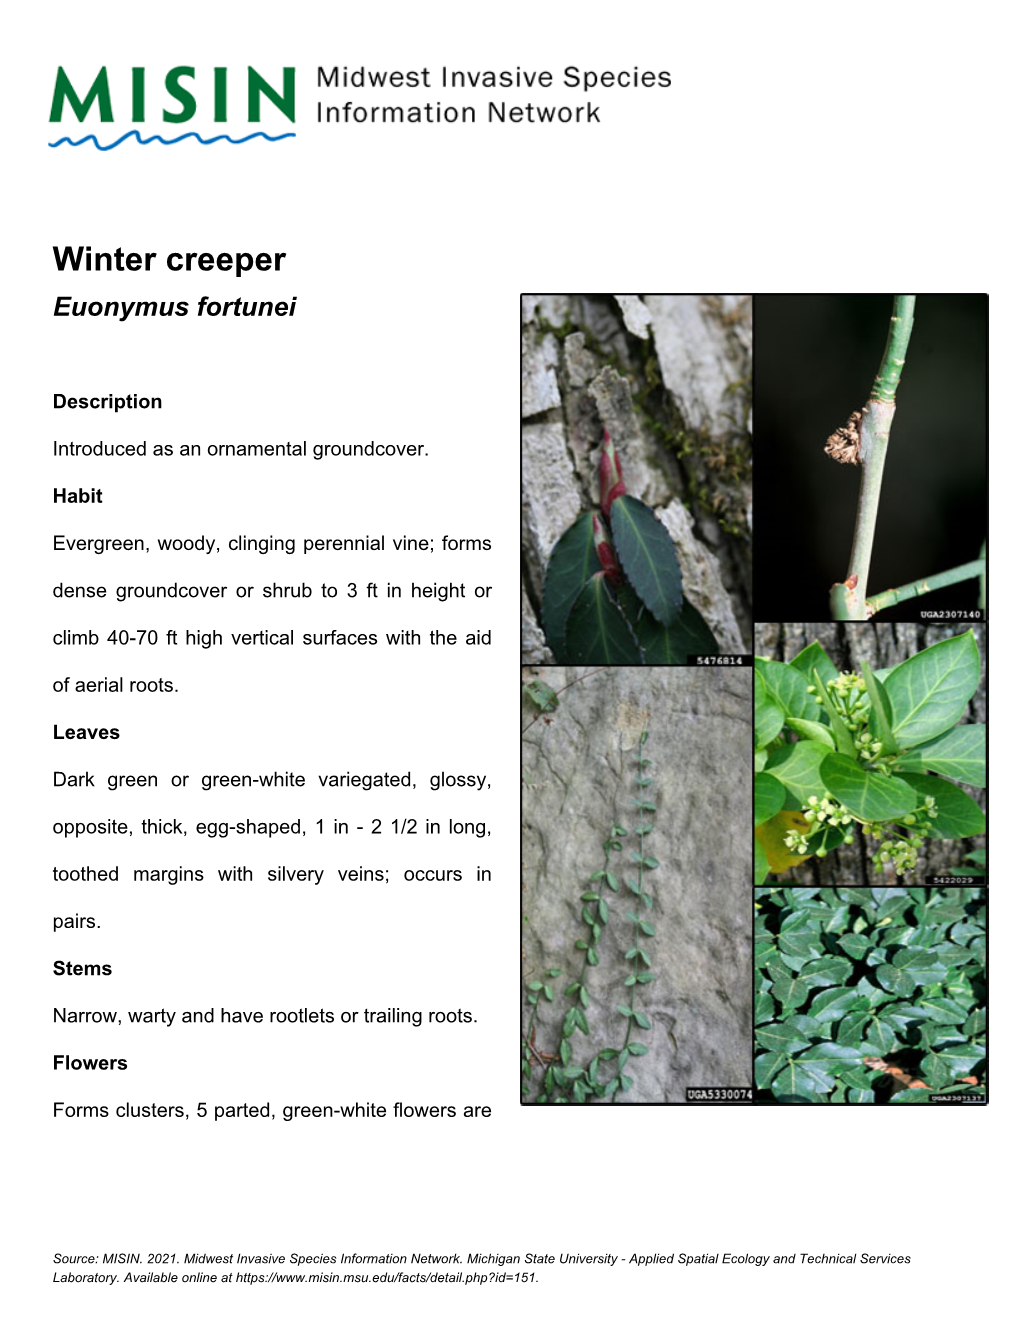 Winter Creeper Euonymus Fortunei